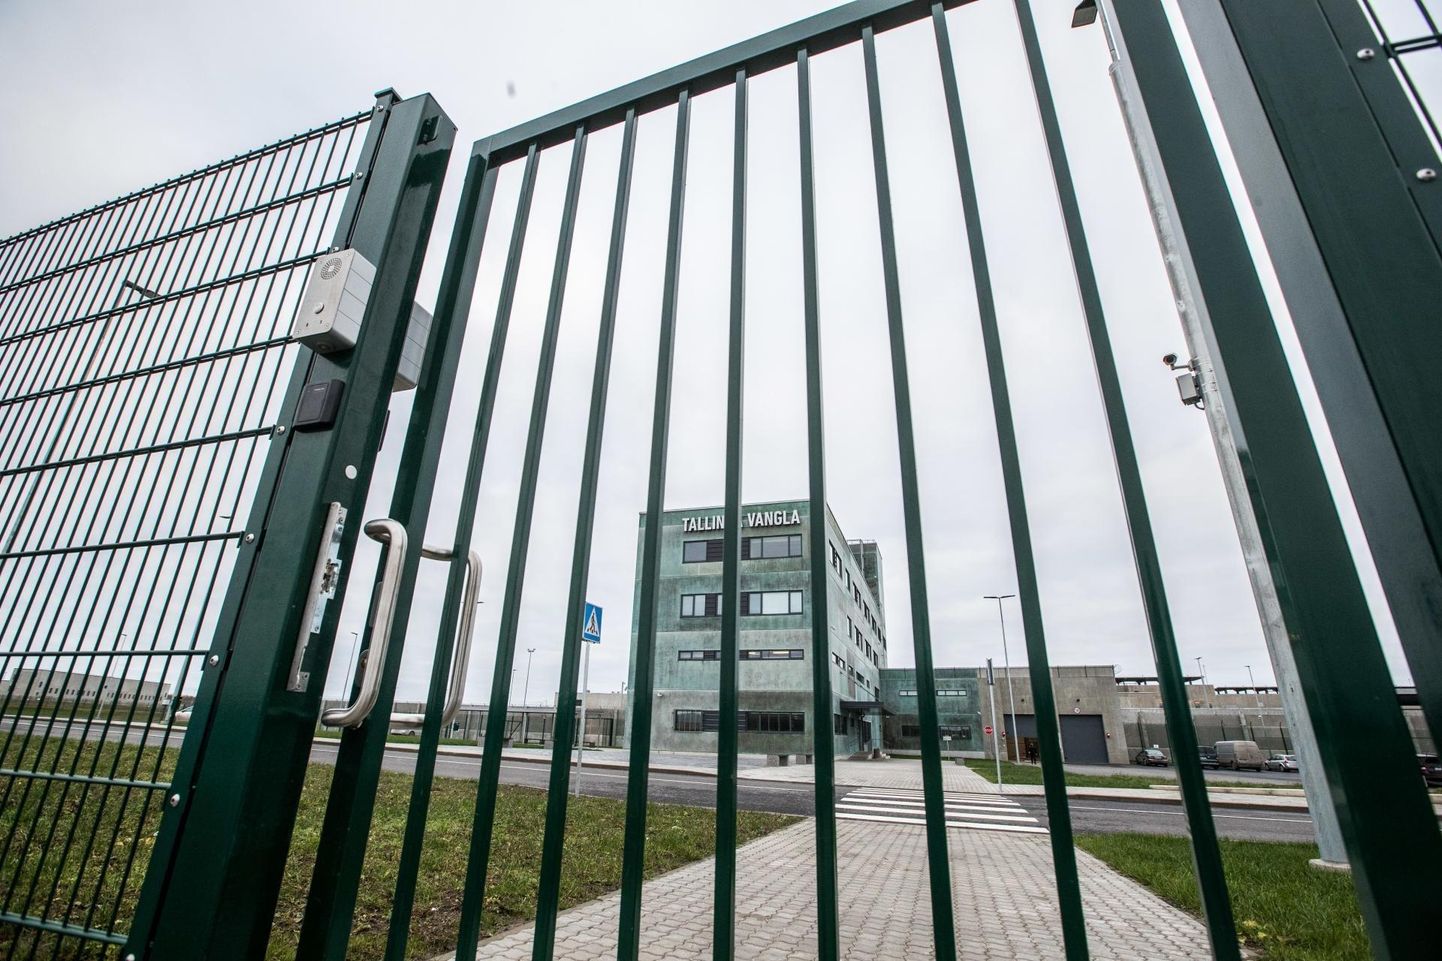 Eestis on kolm vanglat: Tallinna, Tartu ja Viru vangla. Fotol on Tallinna vangla värav.